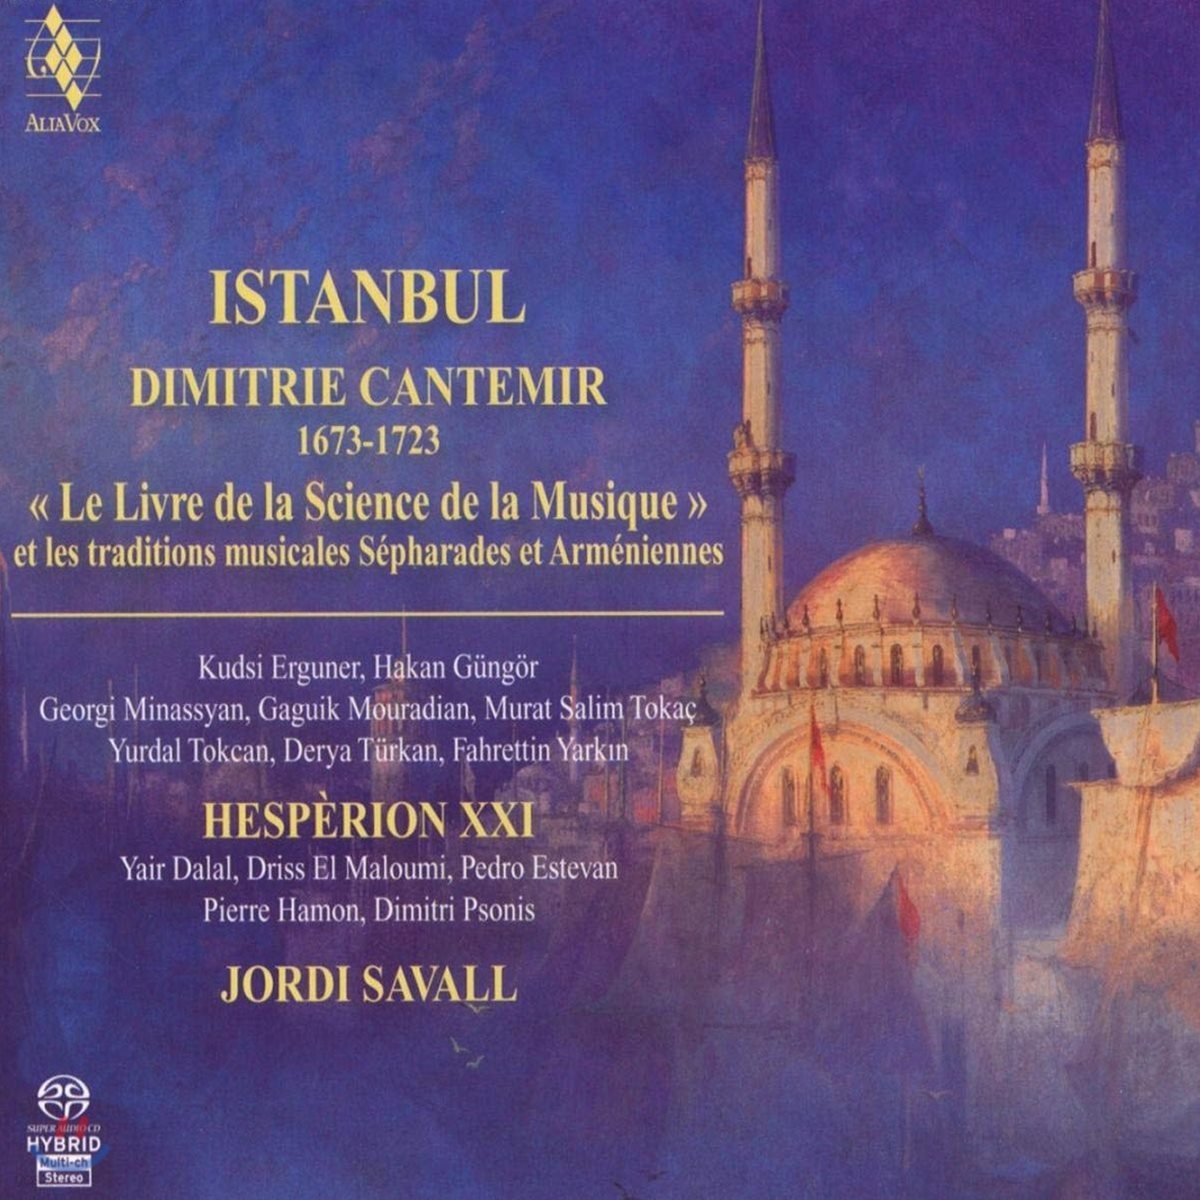 Jordi Savall 이스탄불 - 문자를 사용하는 표기법에 의한 음악서 (Istanbul - Le Livre de la Science de la Musique)